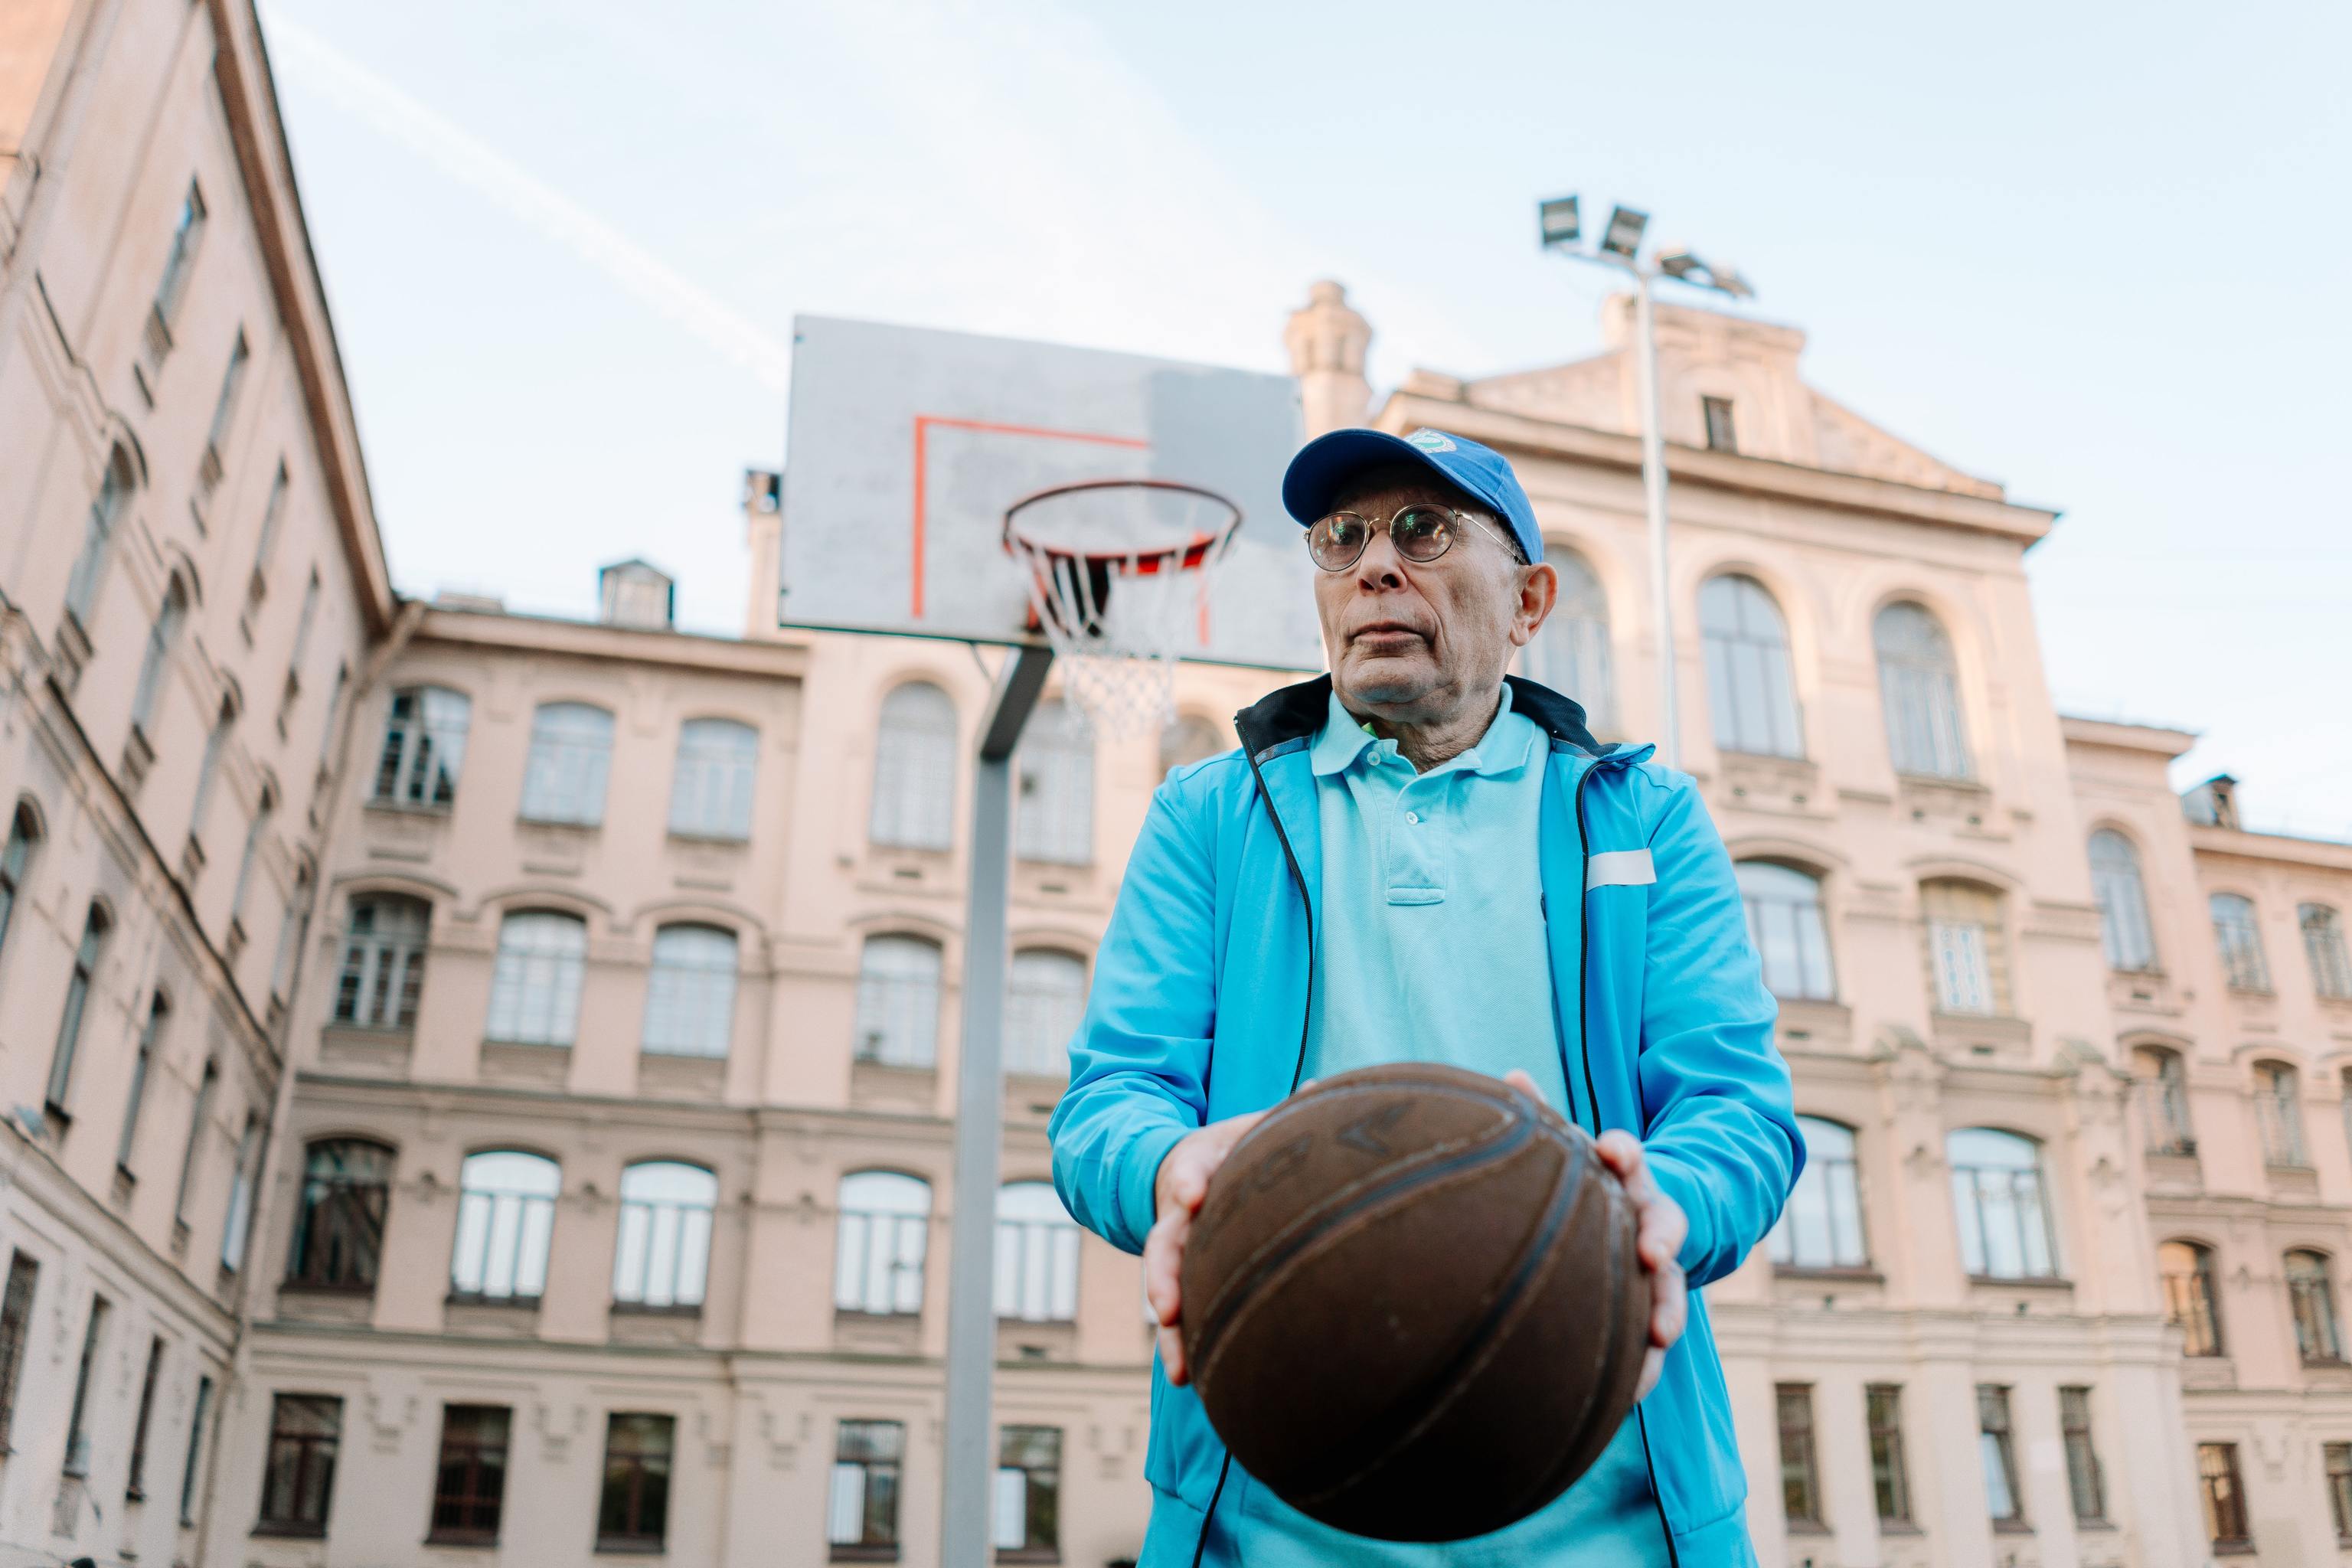 Un hombre jubilado sostiene un baln de baloncesto en una cancha ubicada al lado de un edificio.